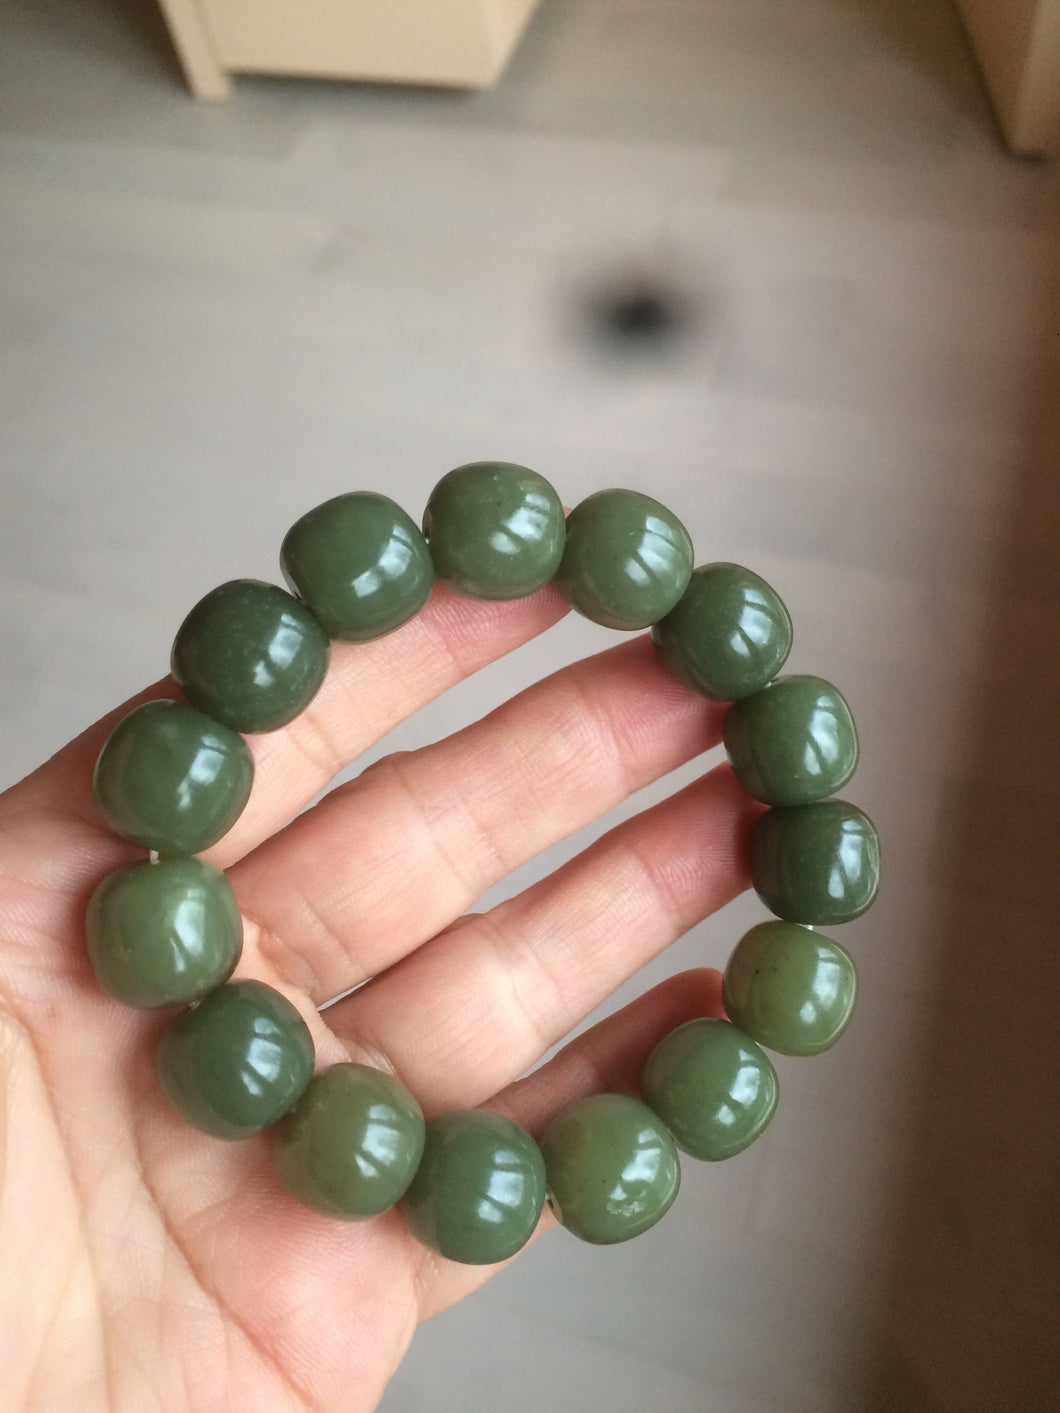 13.5x13.6mm 100% Natural olive green/brown/black vintage style nephrite Hetian Jade bead bracelet HE83